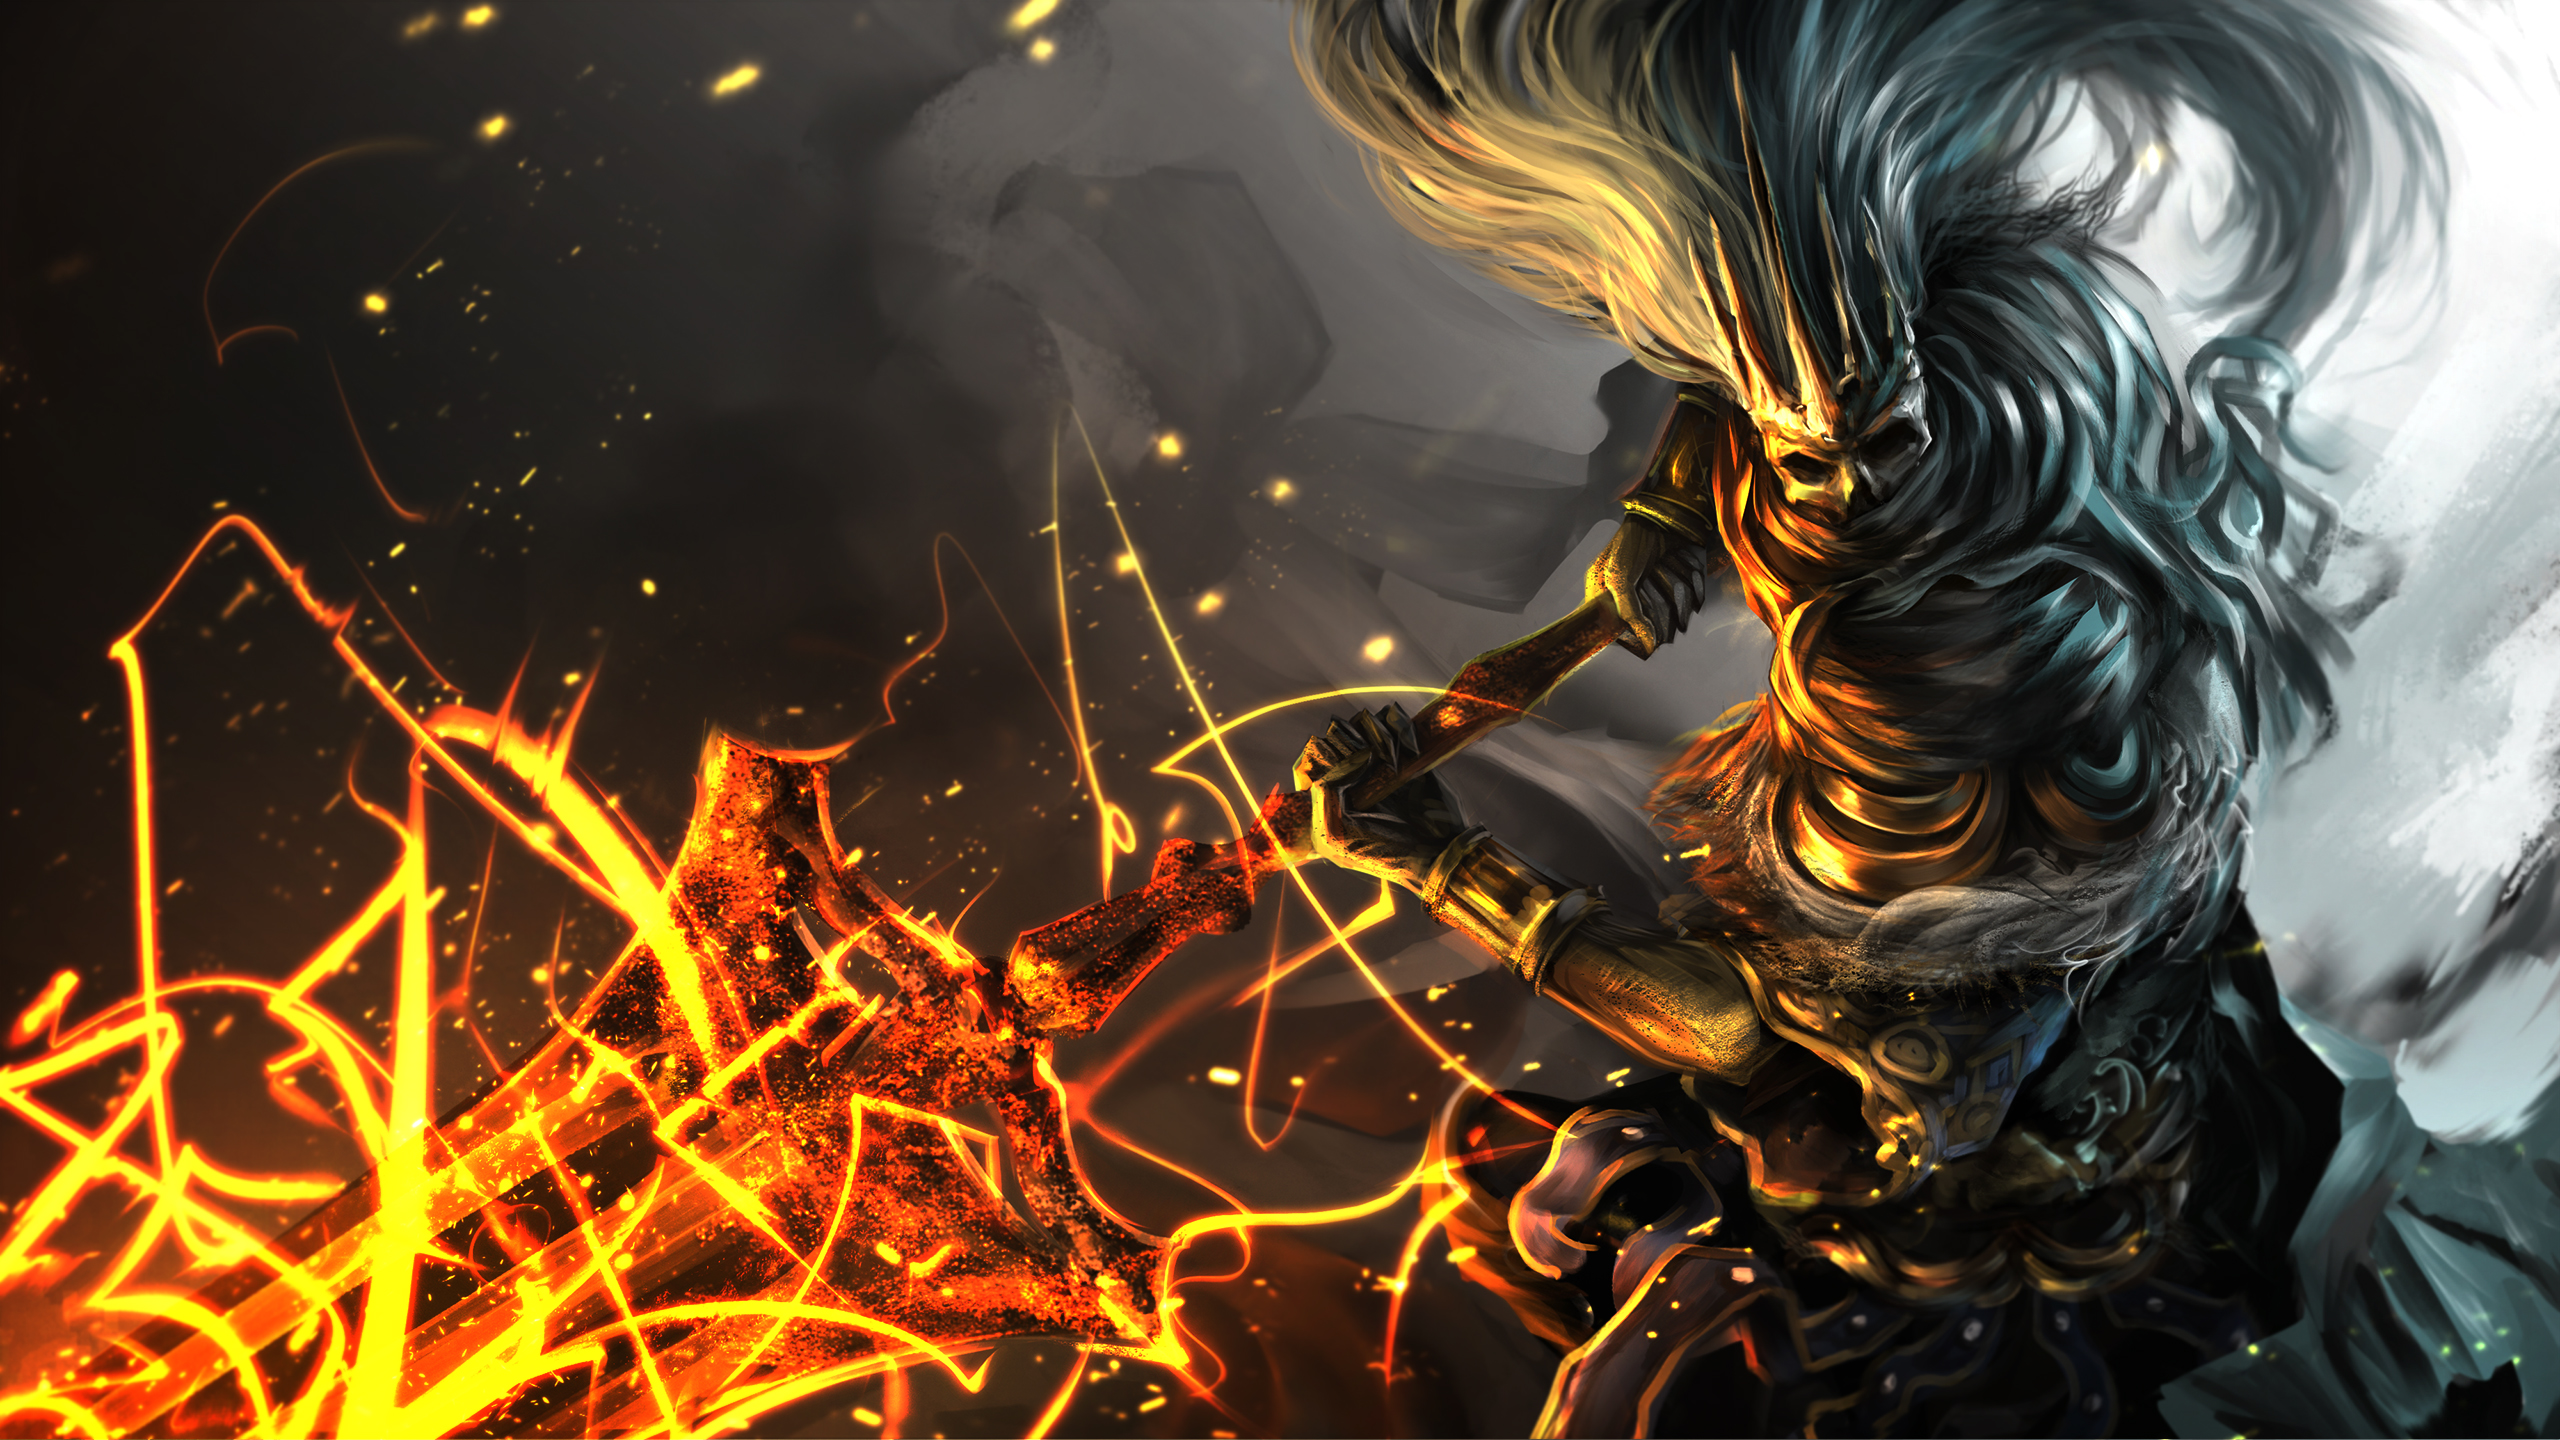  Dark  Souls  3 Artwork 3 HD Games 4k  Wallpapers  Images 